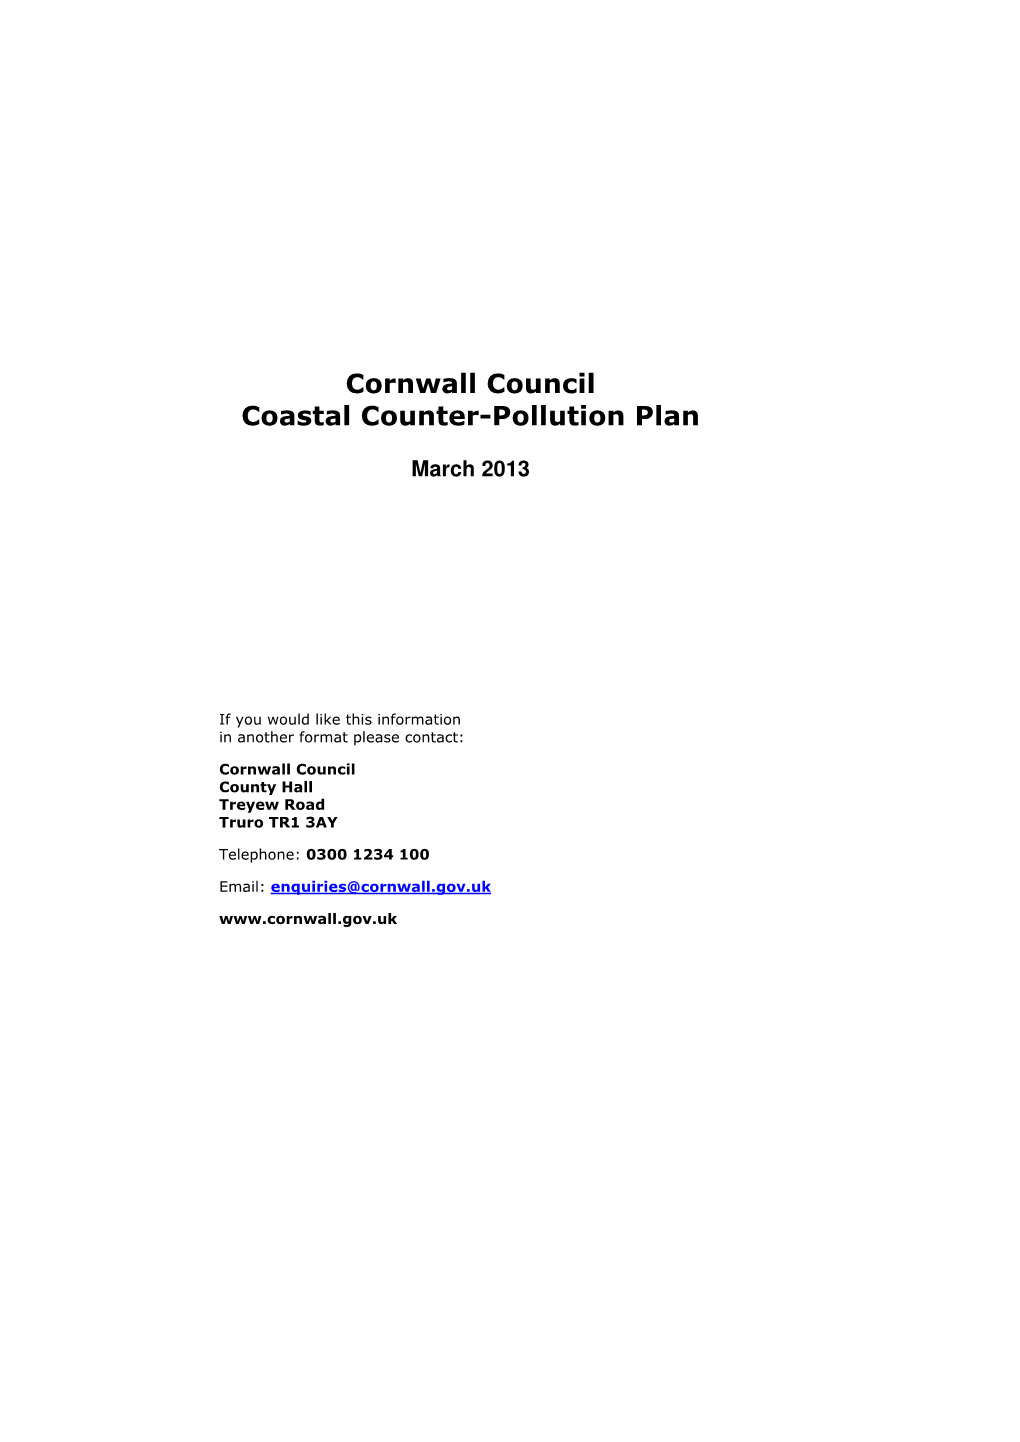 Cornwall Council Coastal Counter Pollution Plan